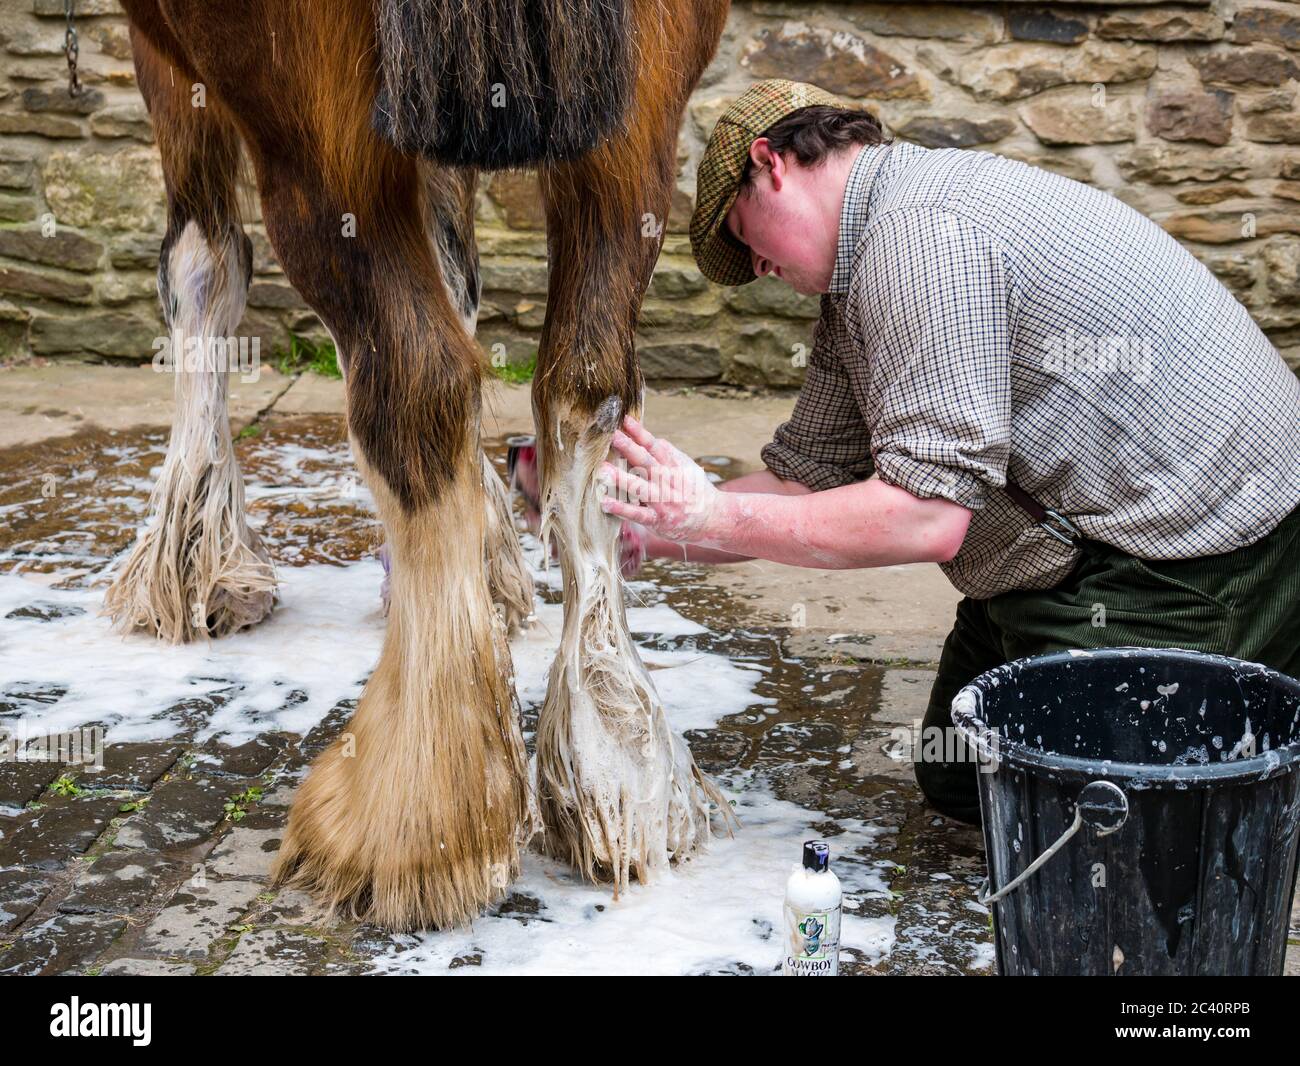 Homme vêtu de vêtements d'époque, lavant des fetlocks de cheval avec de l'eau savonneuse, Beamish Museum, Durham County, Angleterre, Royaume-Uni Banque D'Images